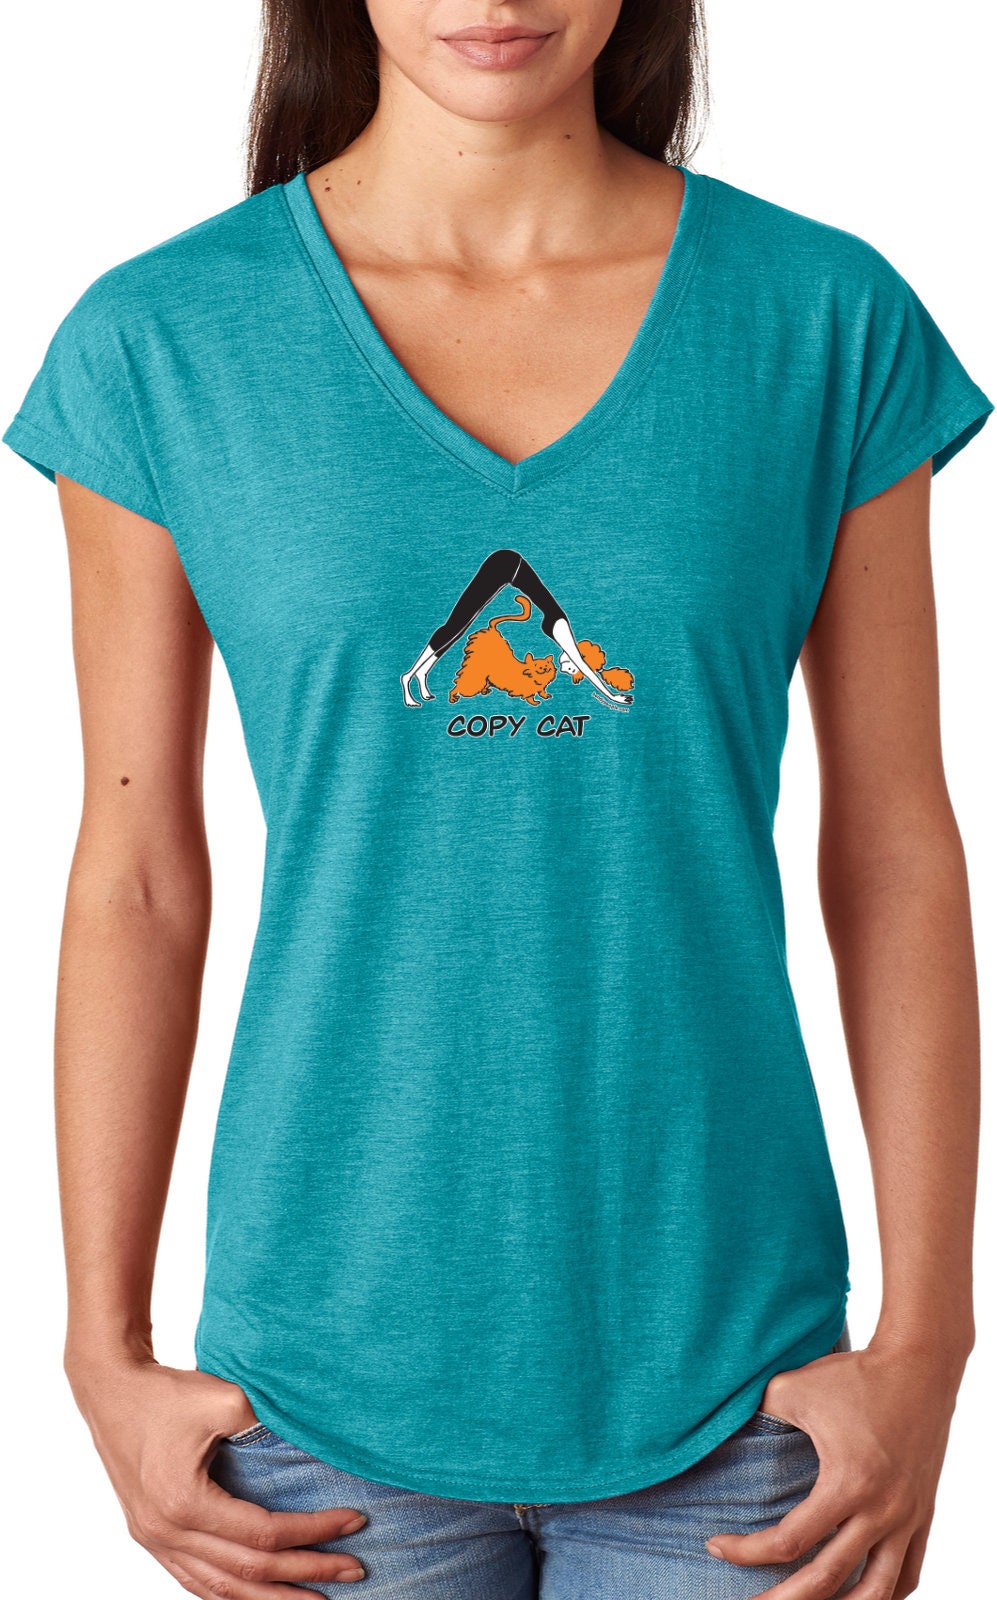 Copy Cat Ladies Yoga Tri Blend V-Neck Tee Shirt = Copycat-6750Vl